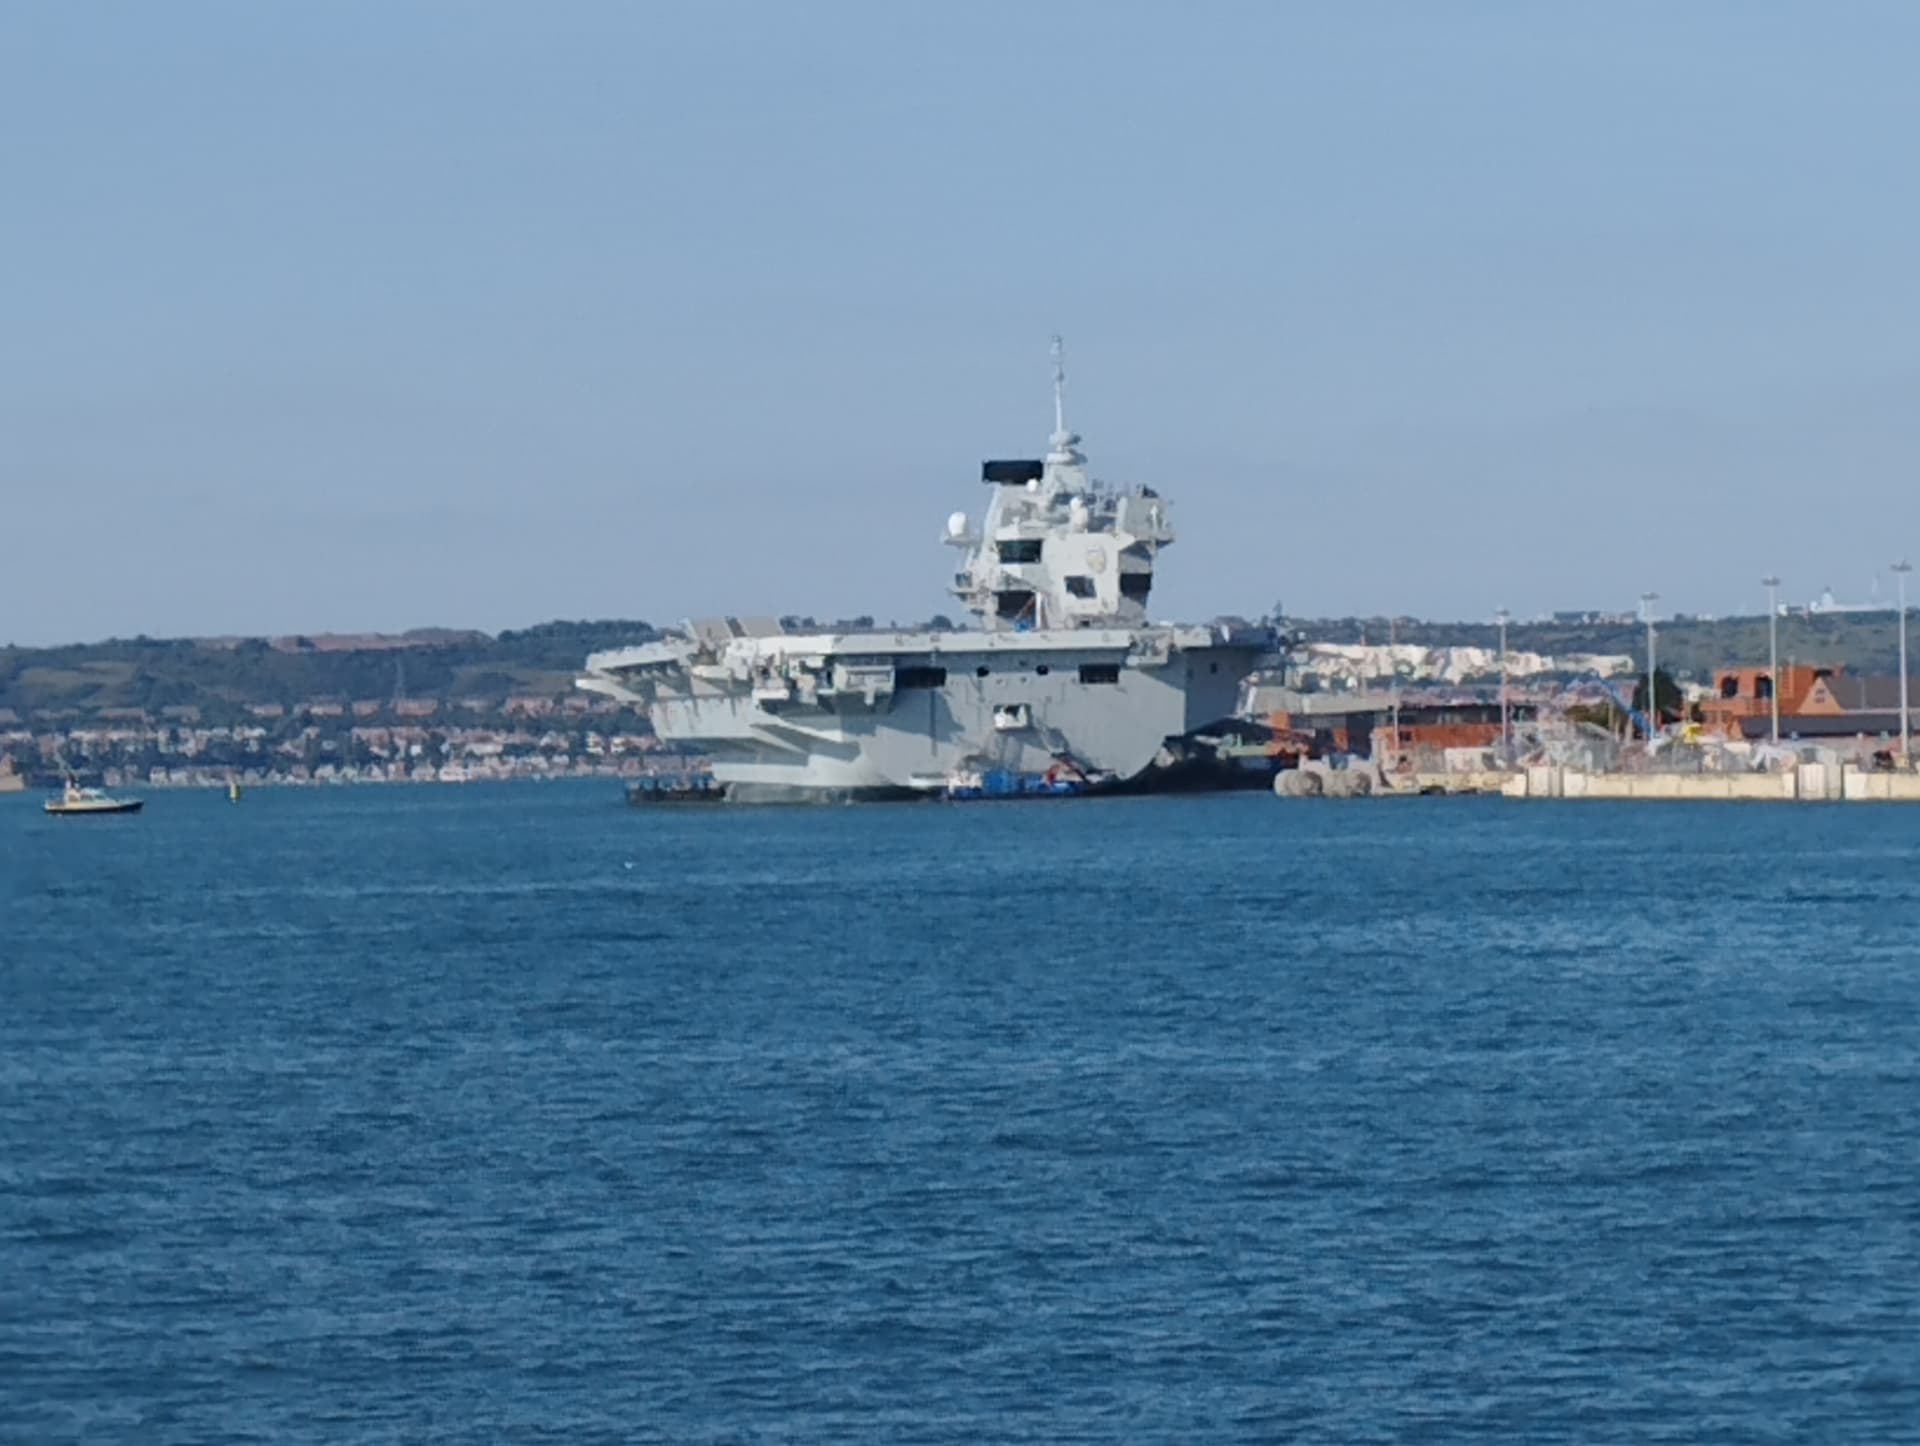 Vždy připraveni. Základna královského námořnictva v Portsmouthu. Na snímku bitevník Prince of Wales. Letadlová loď se nejlépe fotí z přívozu do Gosportu.